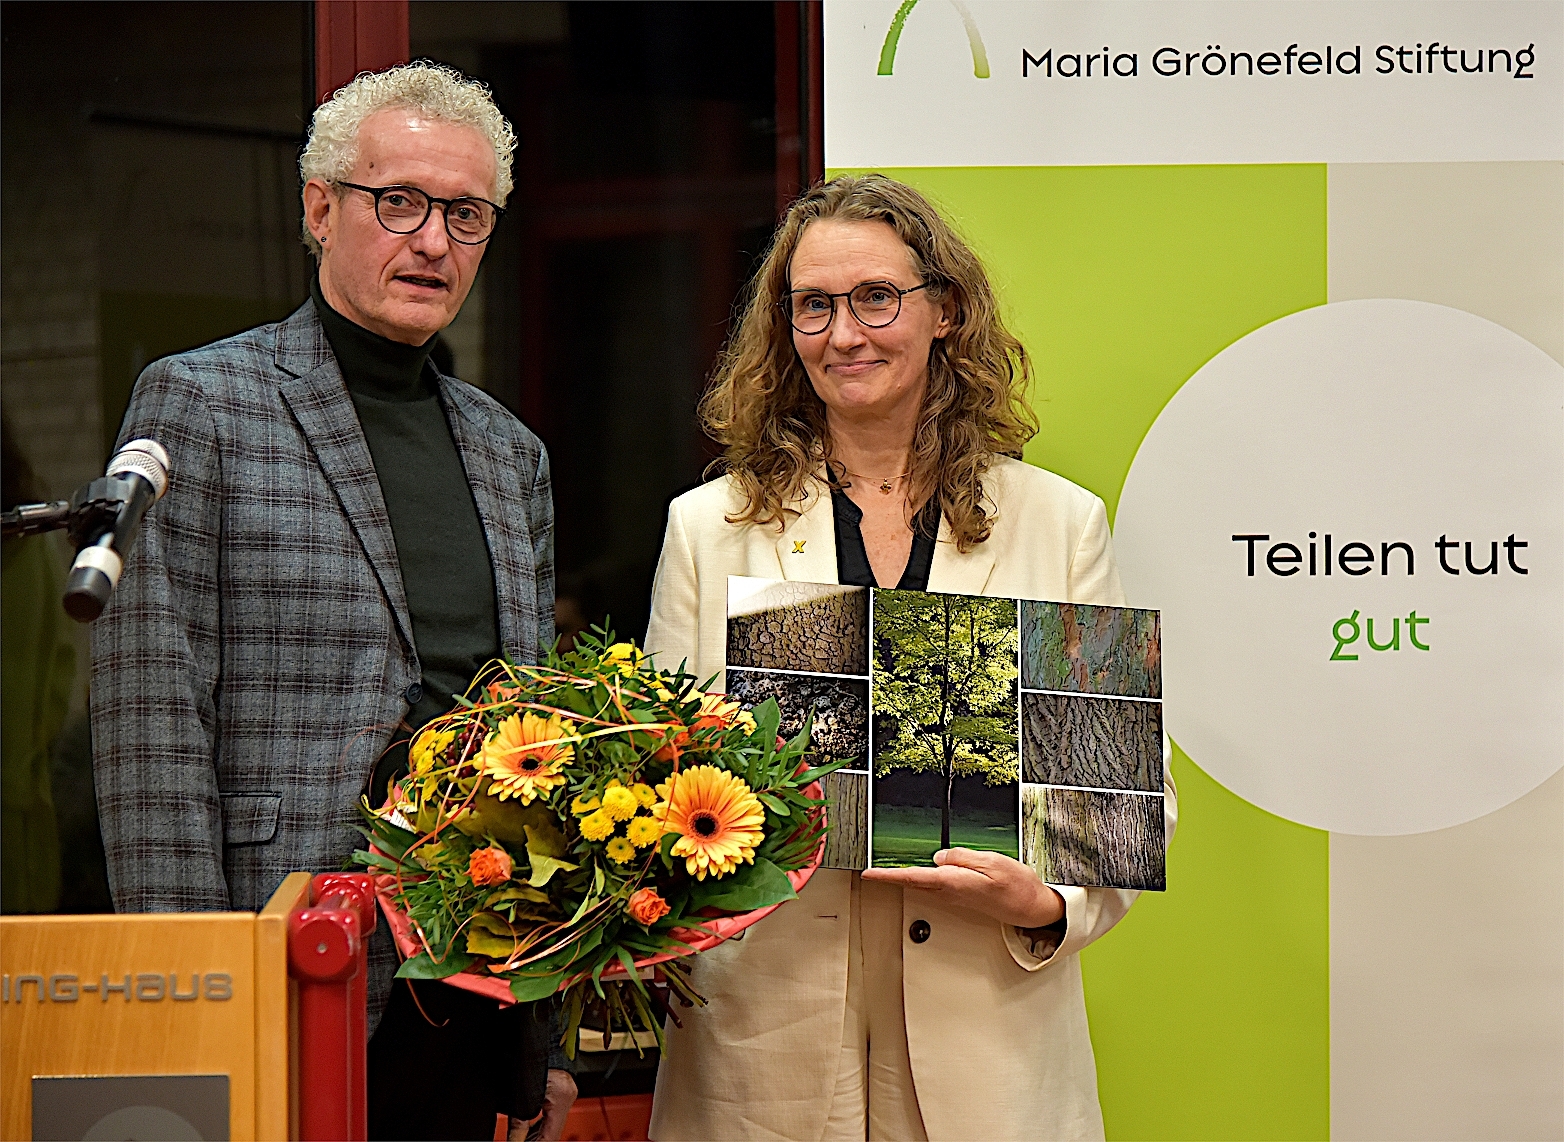 Die Klimaaktivistin und heutige Landtagsabgeordnete Antje Grothus hat den Maria-Grönefeld-Preis 2022 erhalten (c) nbh / A. Gauster